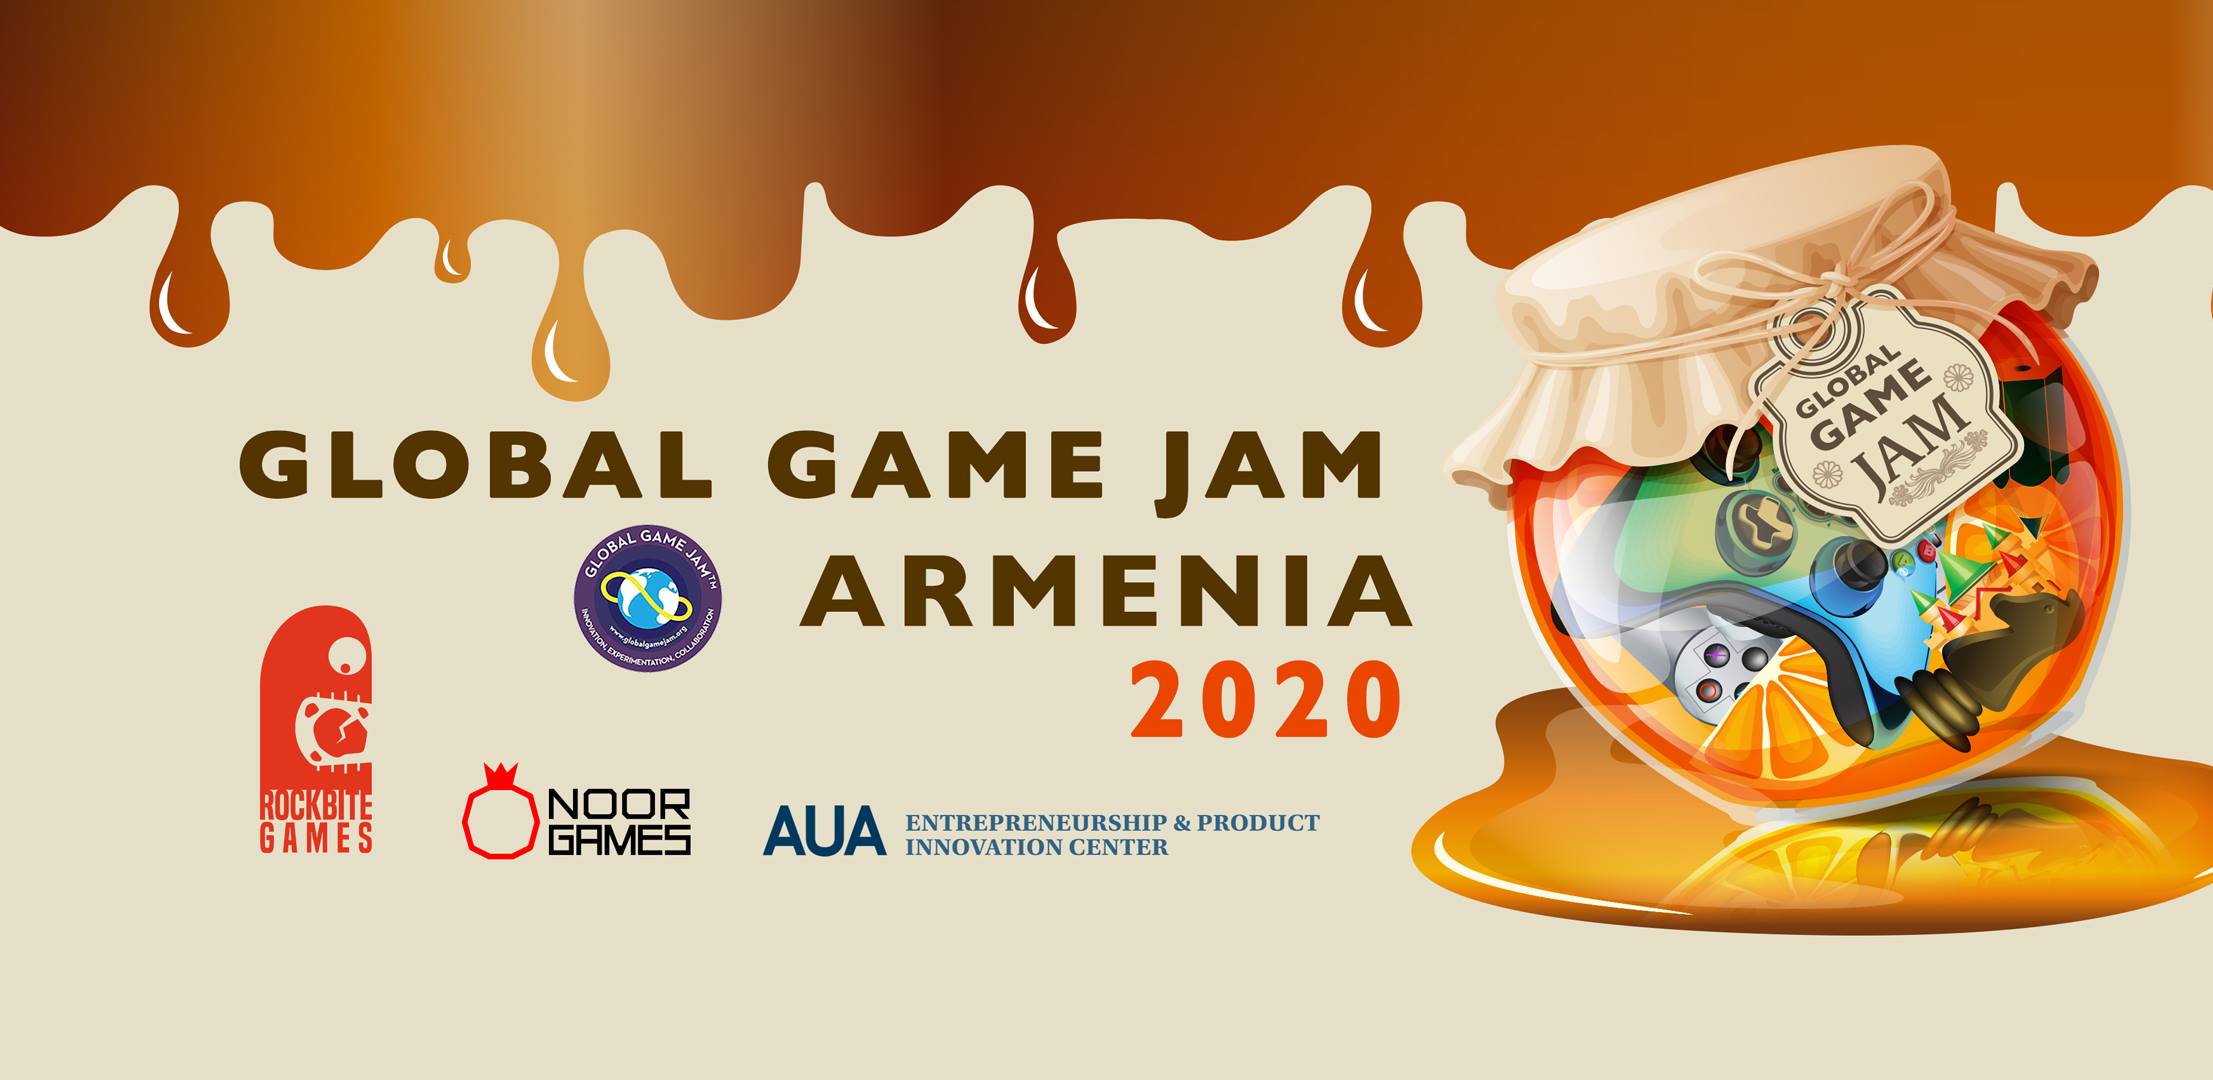 Global Game Jam Armenia 2020